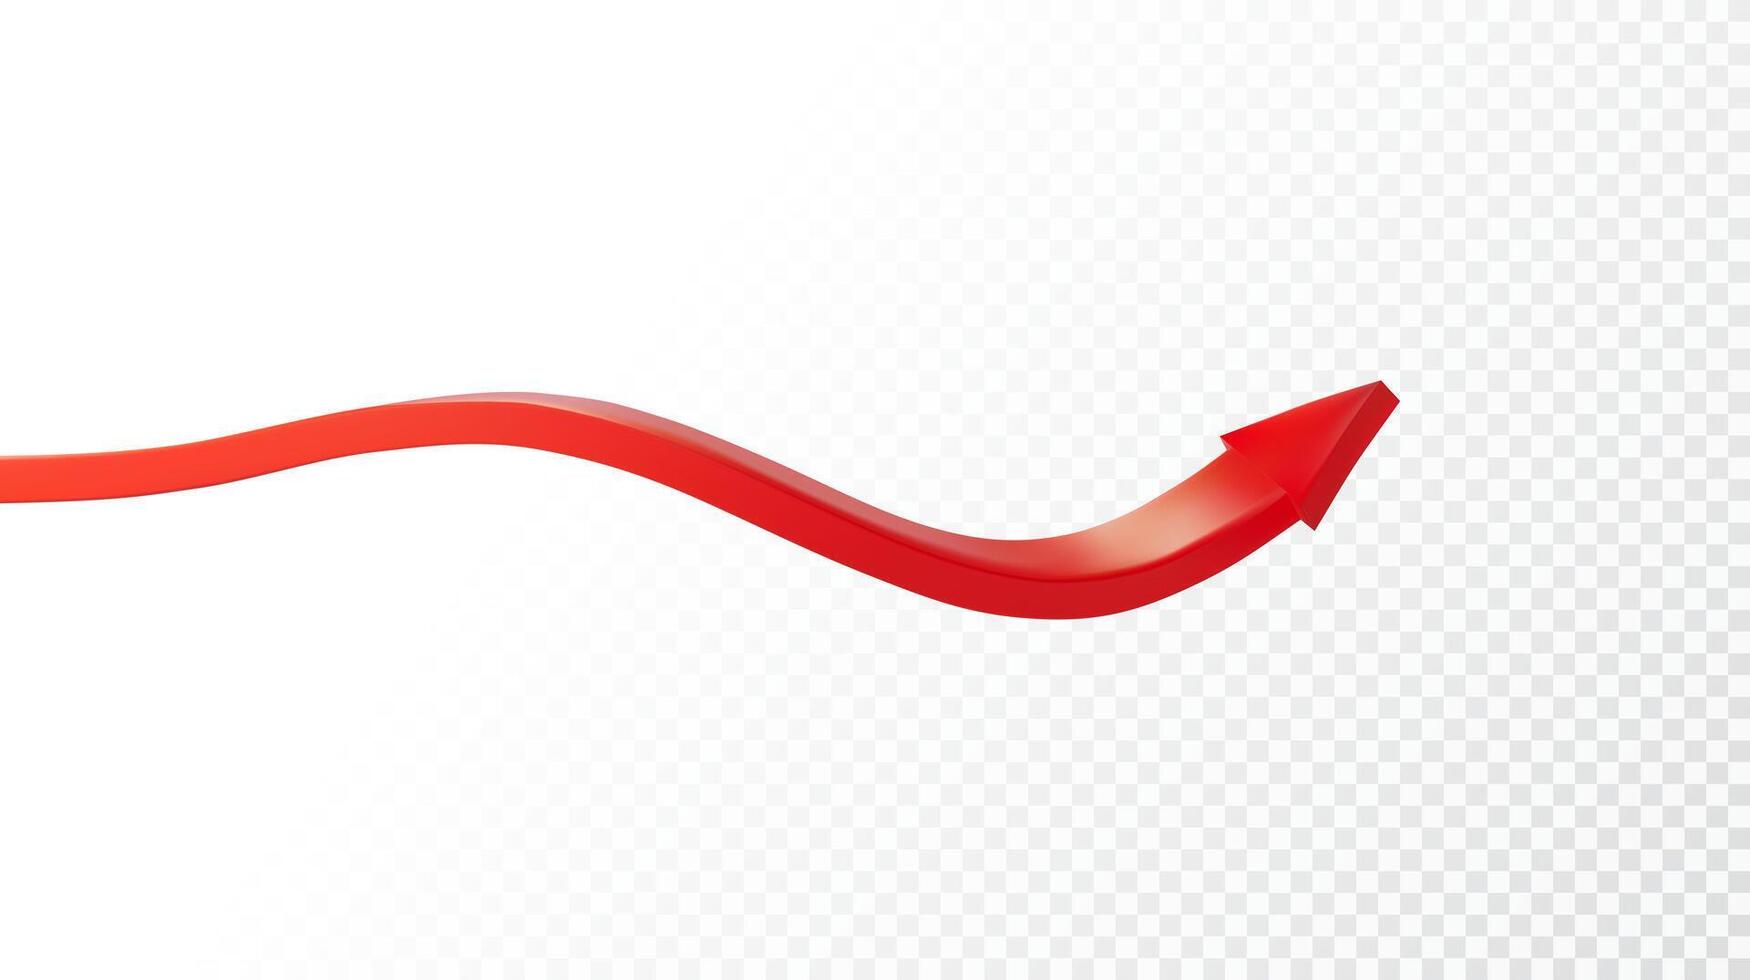 realistisch 3d gedetailleerd rood pijl. vector illustratie voor uw grafisch ontwerp. eps 10